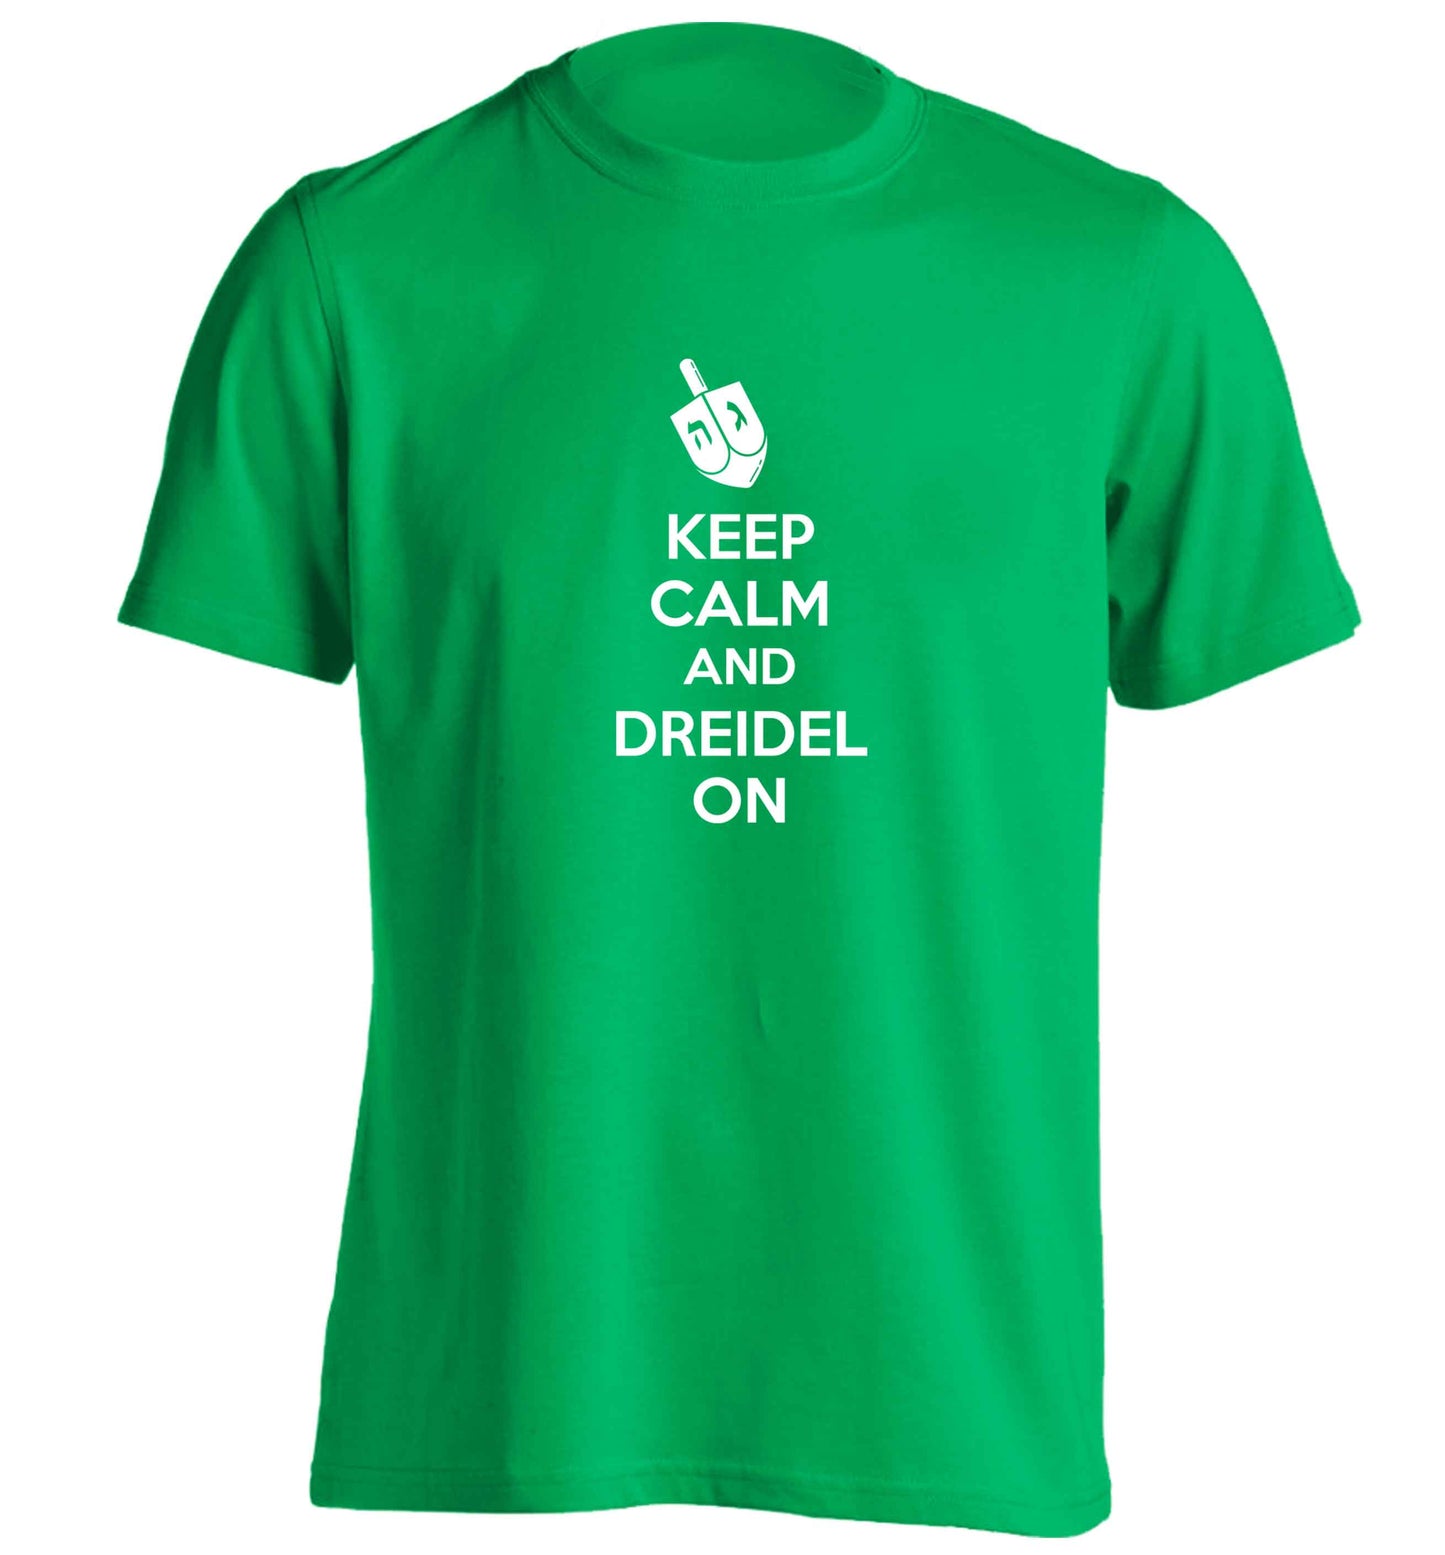 Keep calm and dreidel on adults unisex green Tshirt 2XL